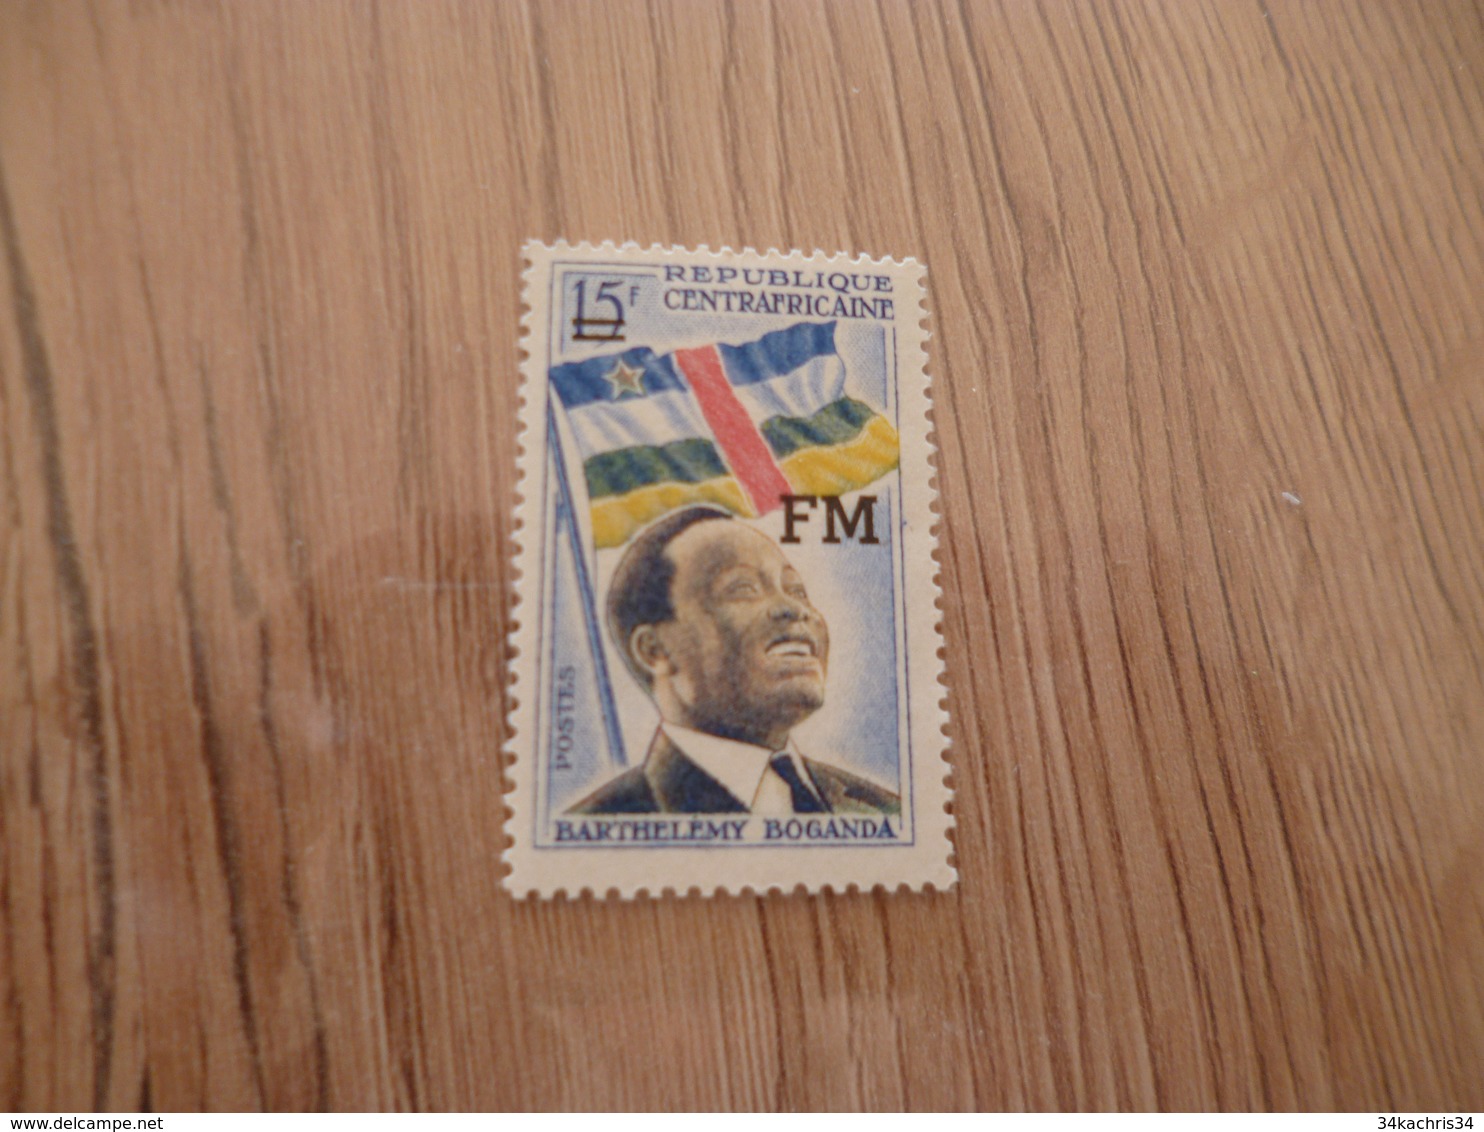 TP Timbre Stamp République Centrafricaine Surcharge FM - Central African Republic